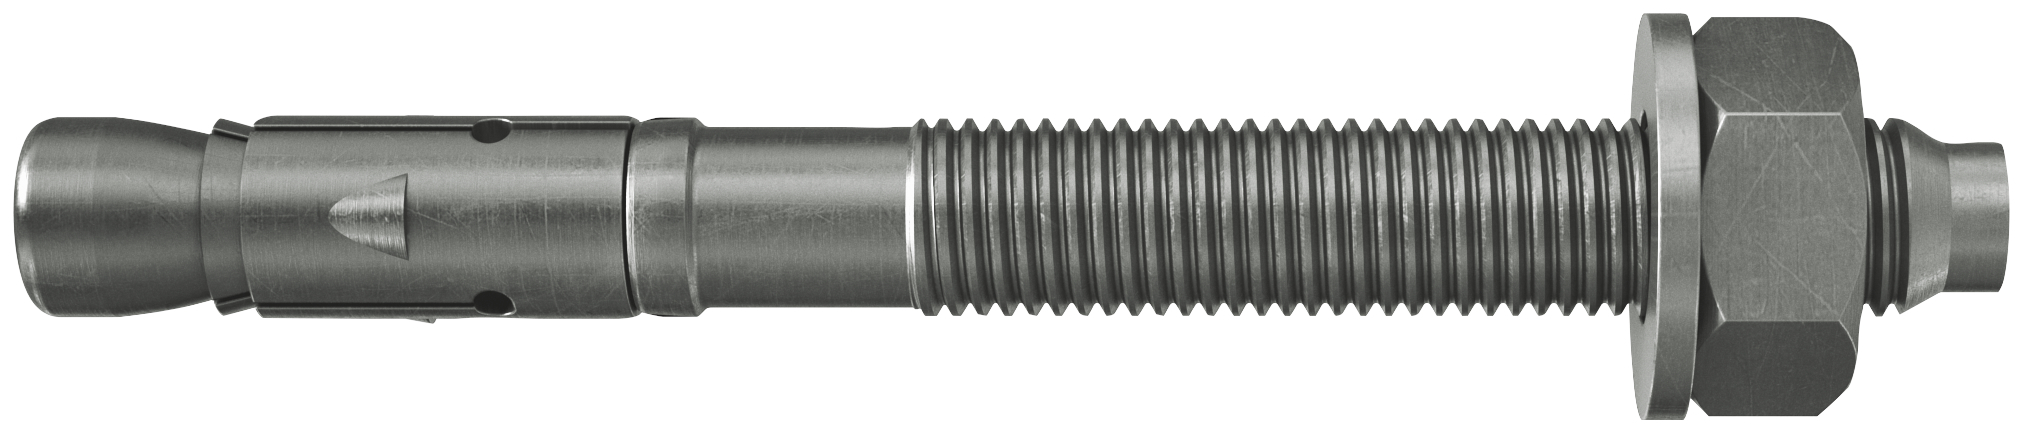 fischer Tassello acciaio FAZ II 16/5 A4 (20 Pz.) L'ancorante ad espansione ad alte prestazioni per carichi statici su calcestruzzo fessurato e per applicazioni sismiche. Versione in acciaio inossidabile con classe di resistenza alla corrosione CRC III..